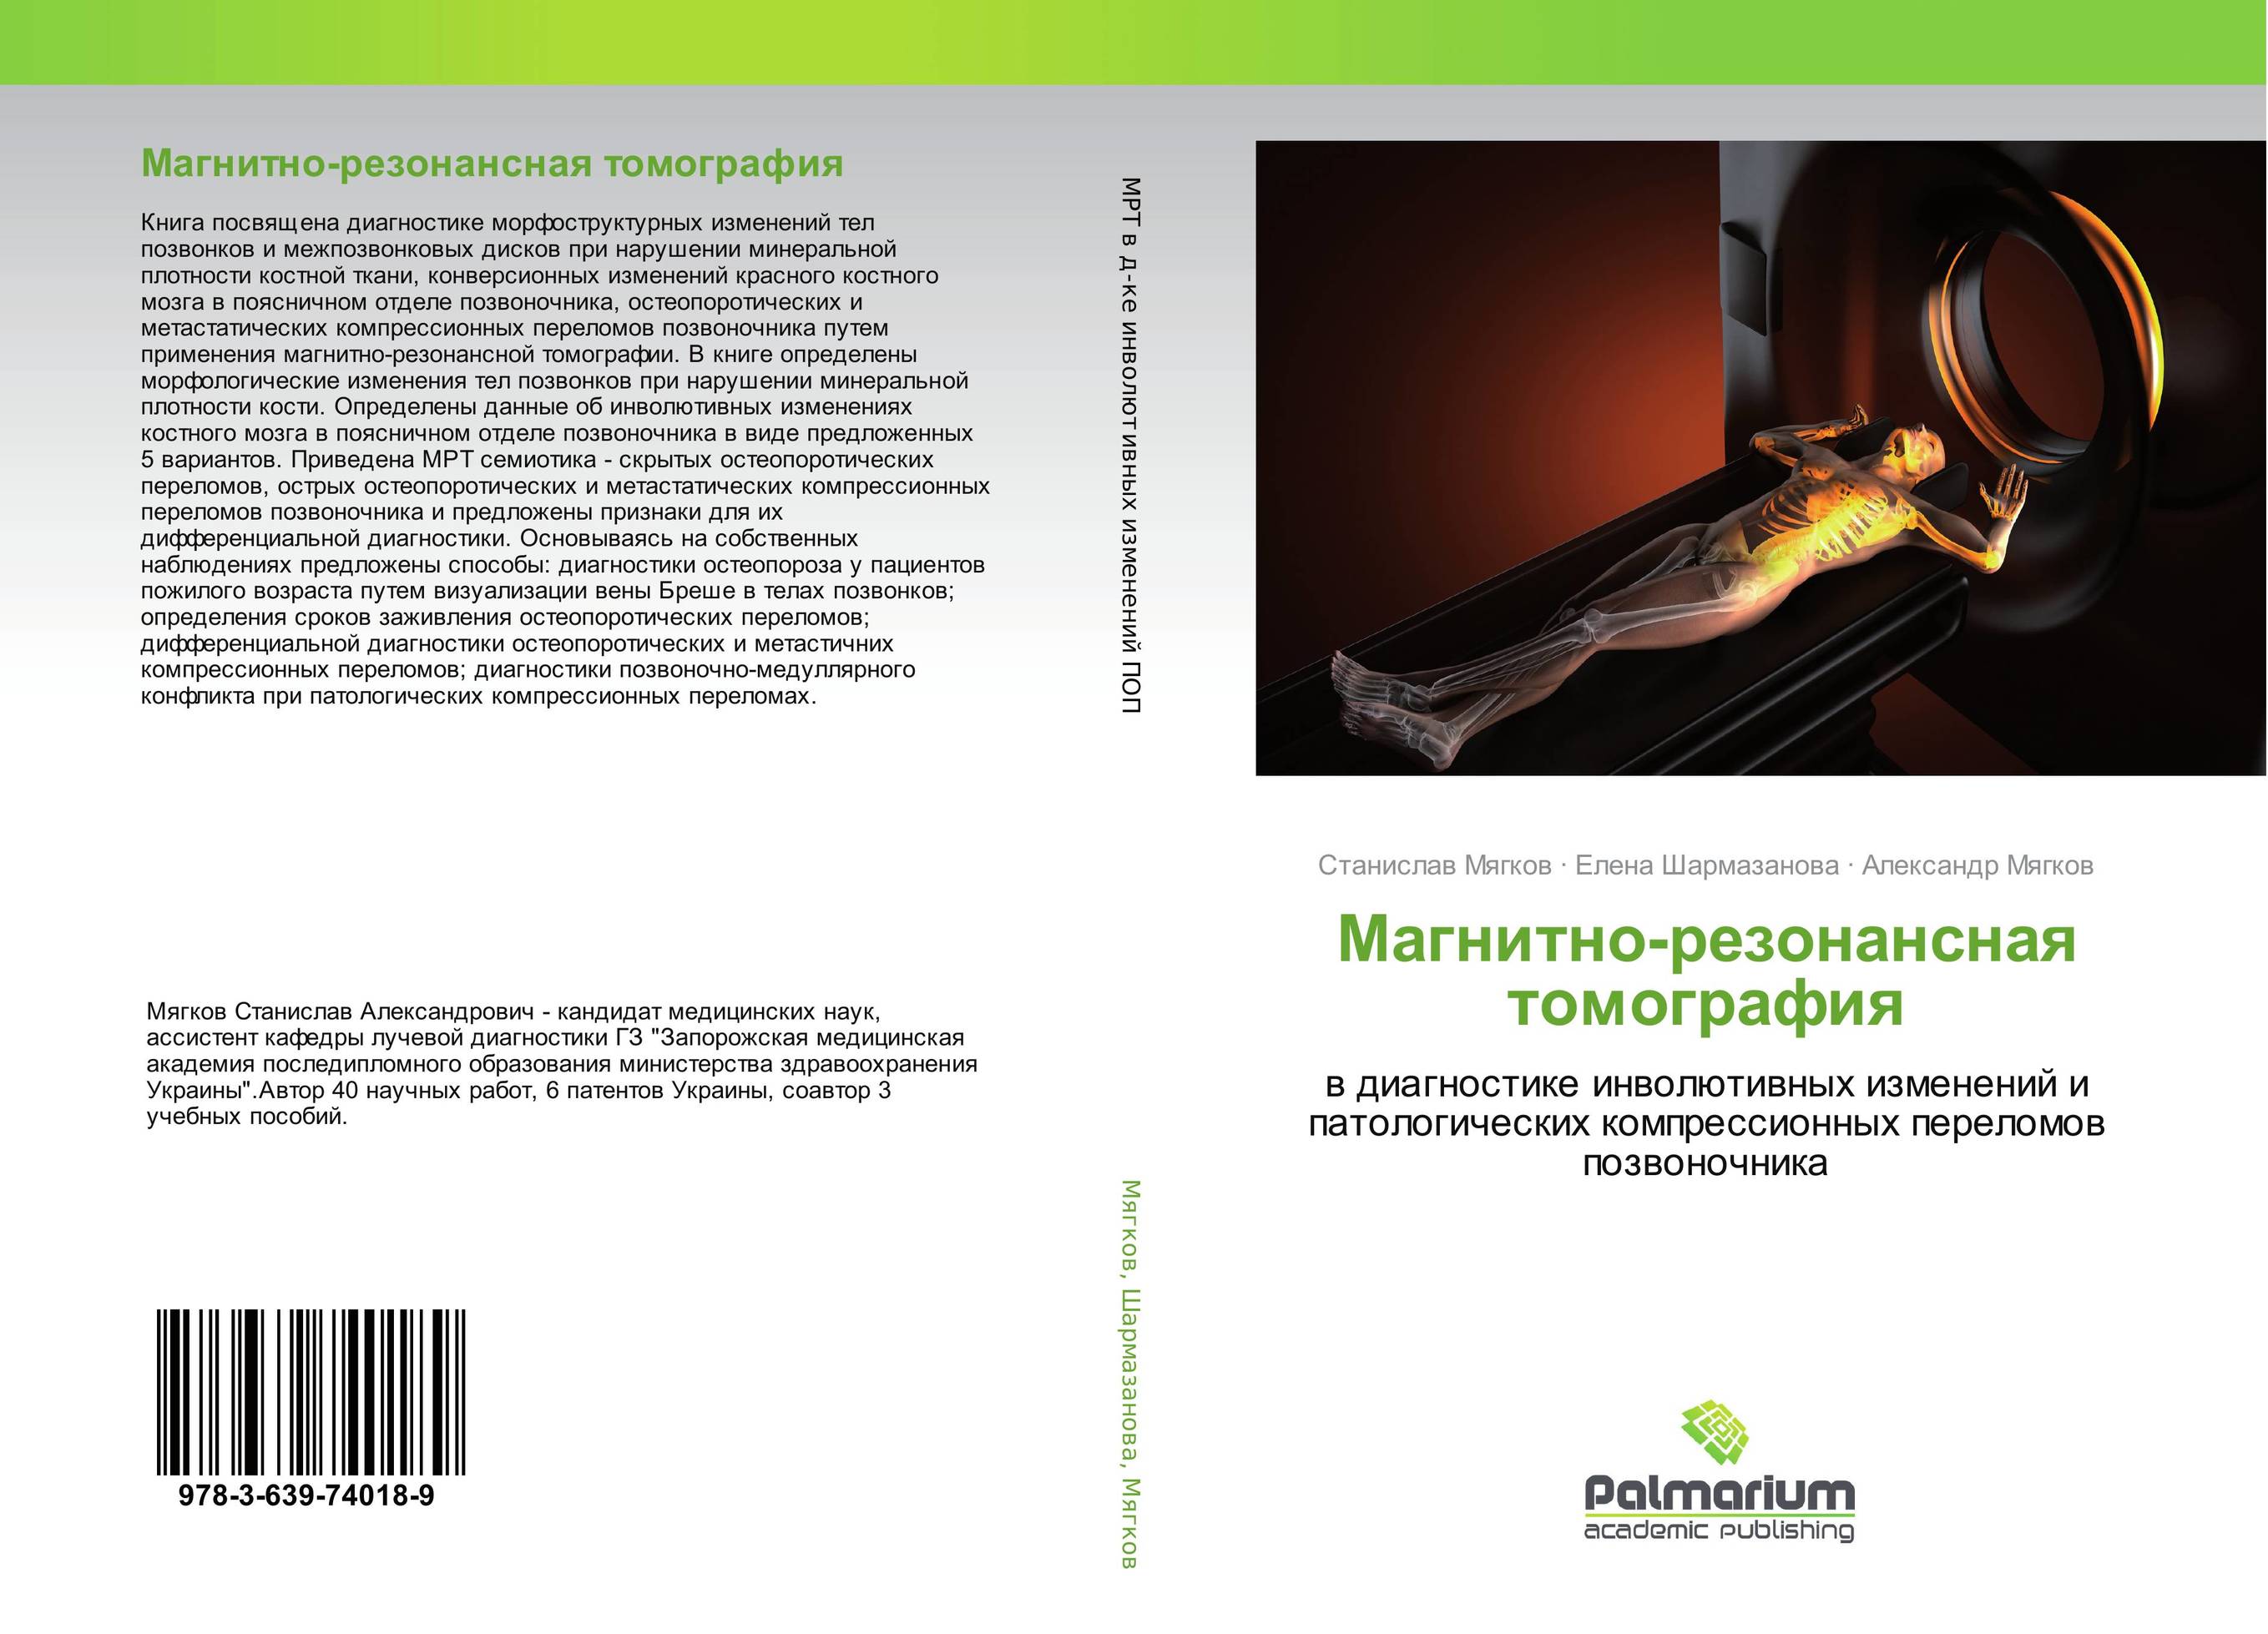 
        Магнитно-резонансная томография. В диагностике инволютивных изменений и патологических компрессионных переломов позвоночника.
      